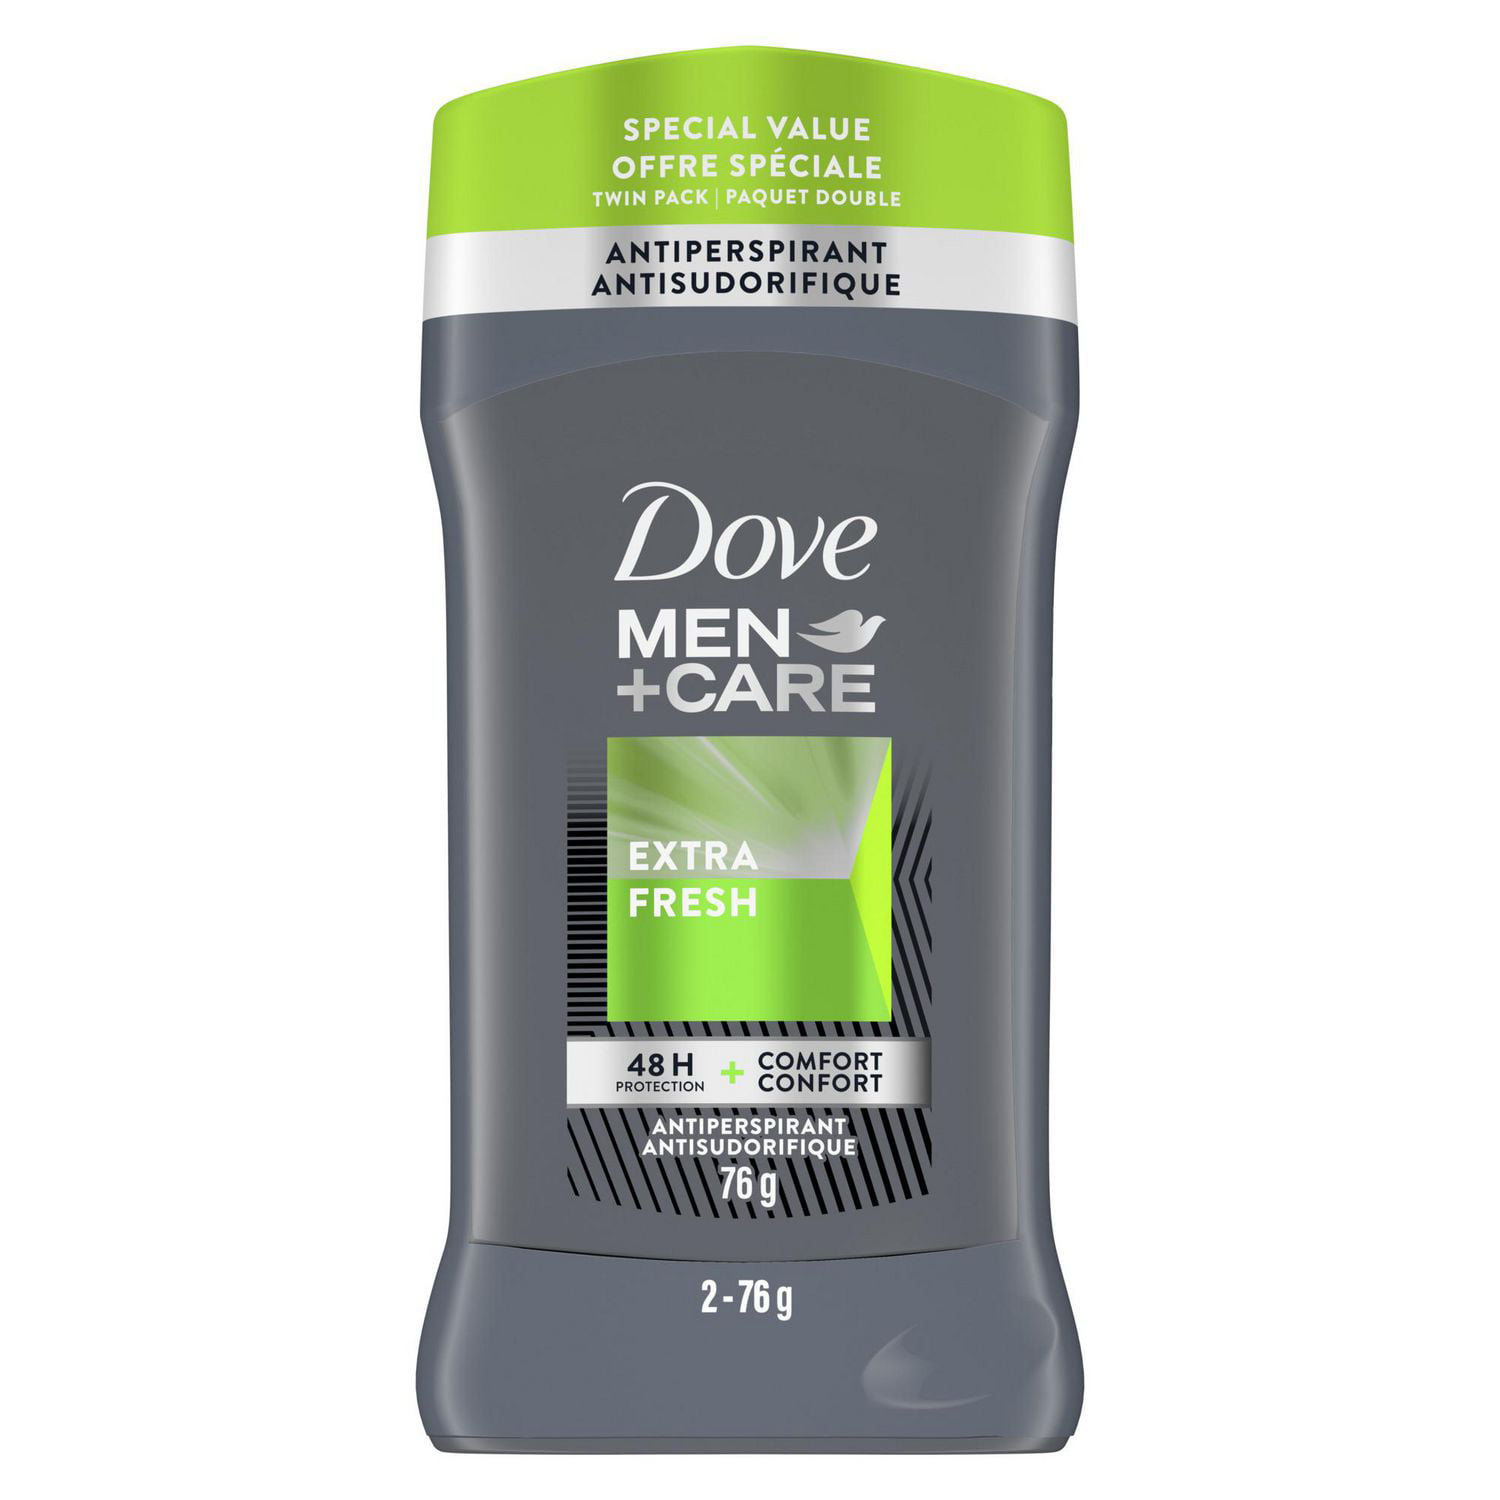 Dove Men Care with Vitamin E and 1/4 Moisturizers Non-Irritant 72H